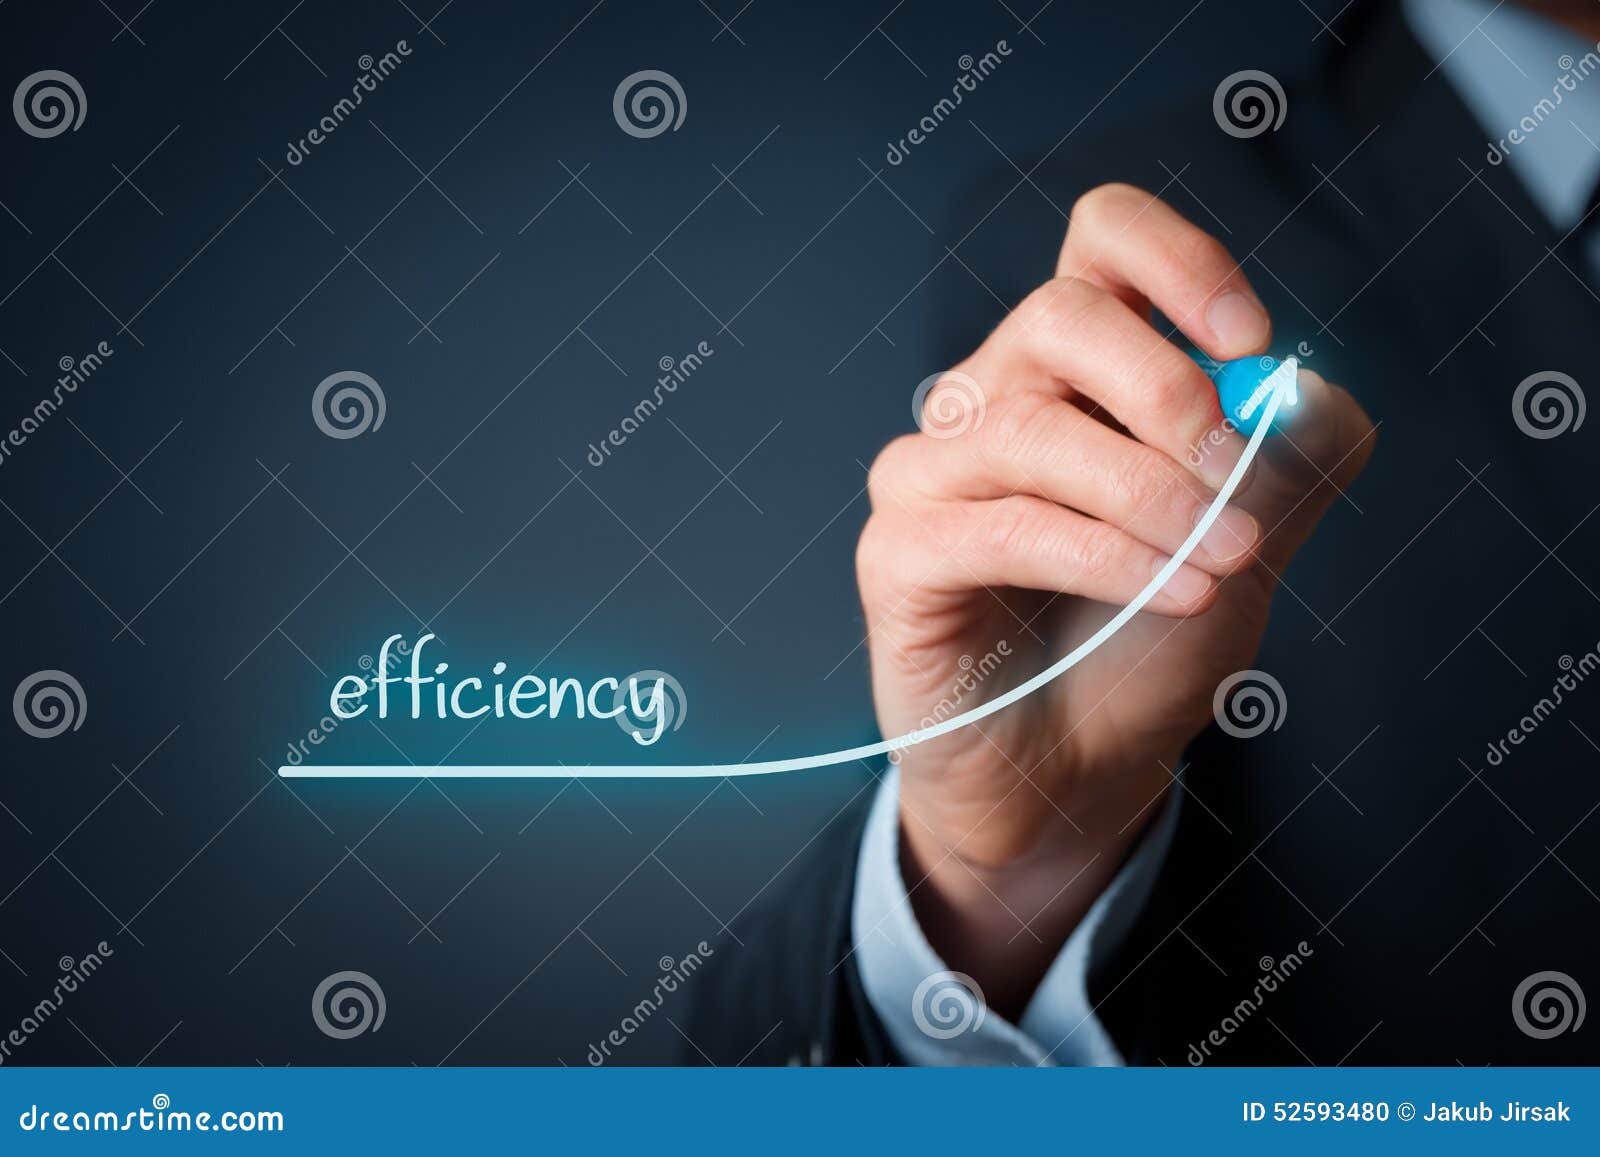 efficiency increase